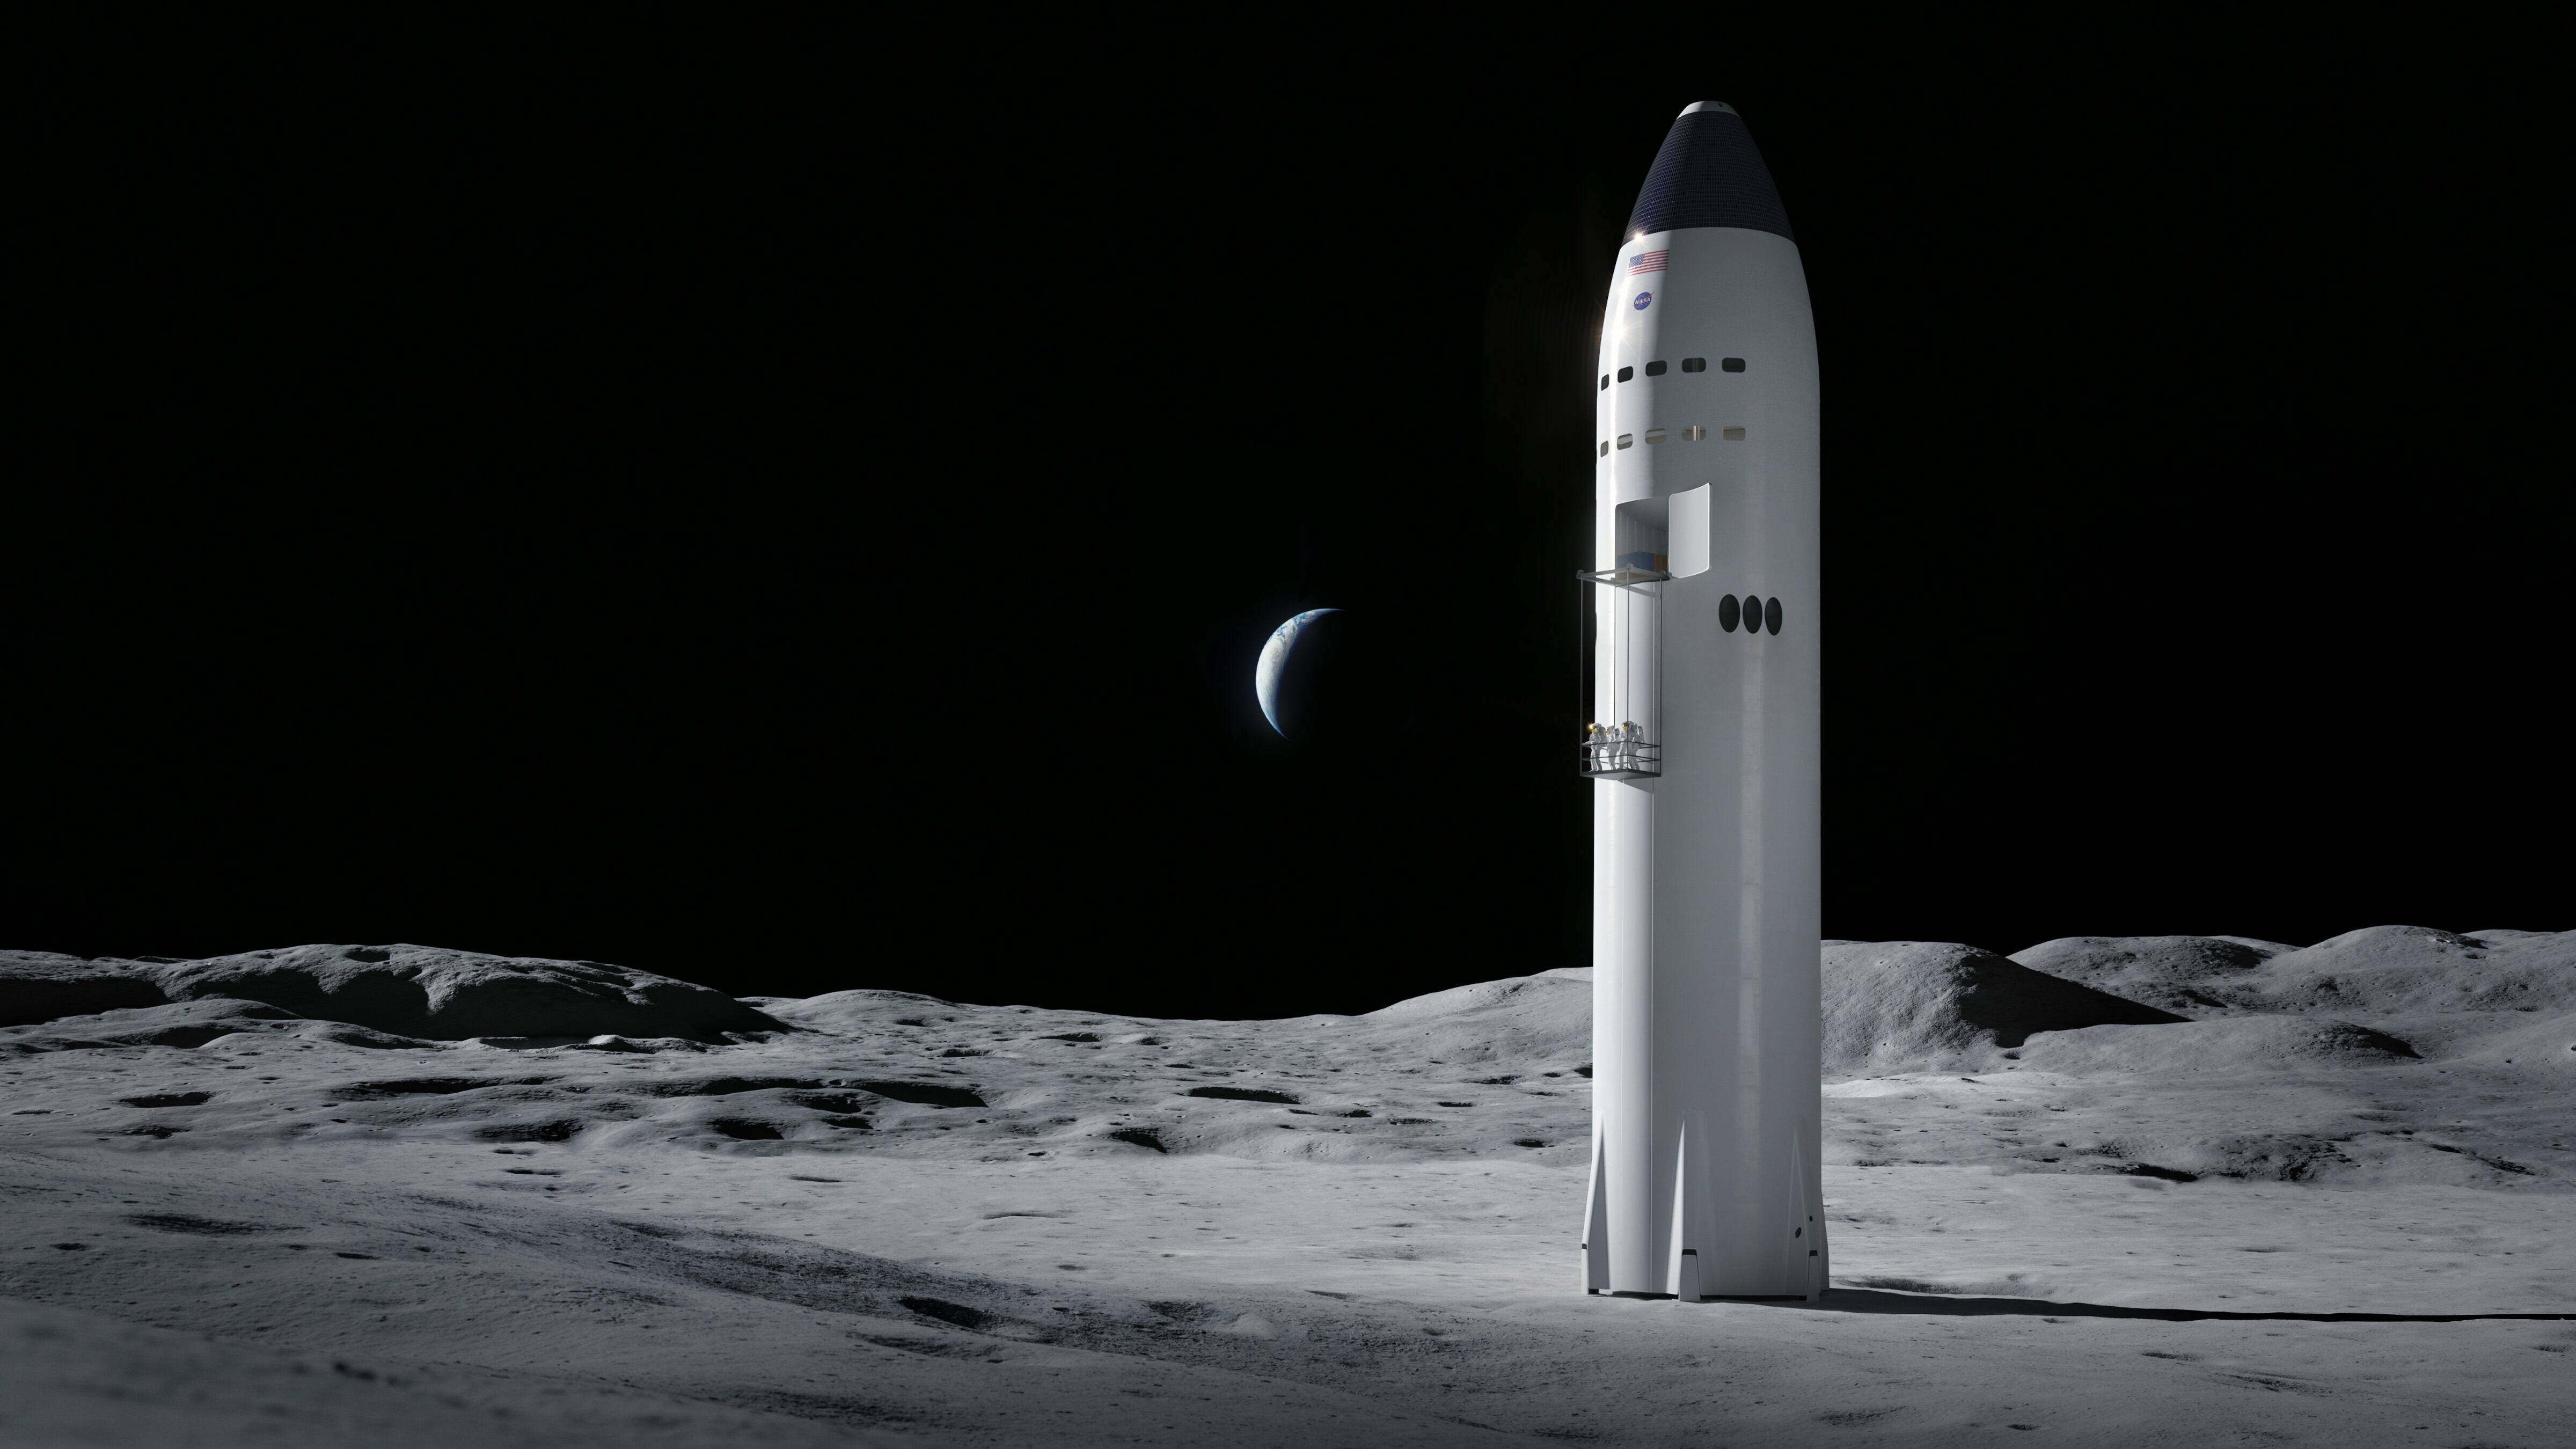 El cohete de Space X, con capacidad para repostar en órbita, utilizará una planta de motores Raptor, sobradamente probados en tierra